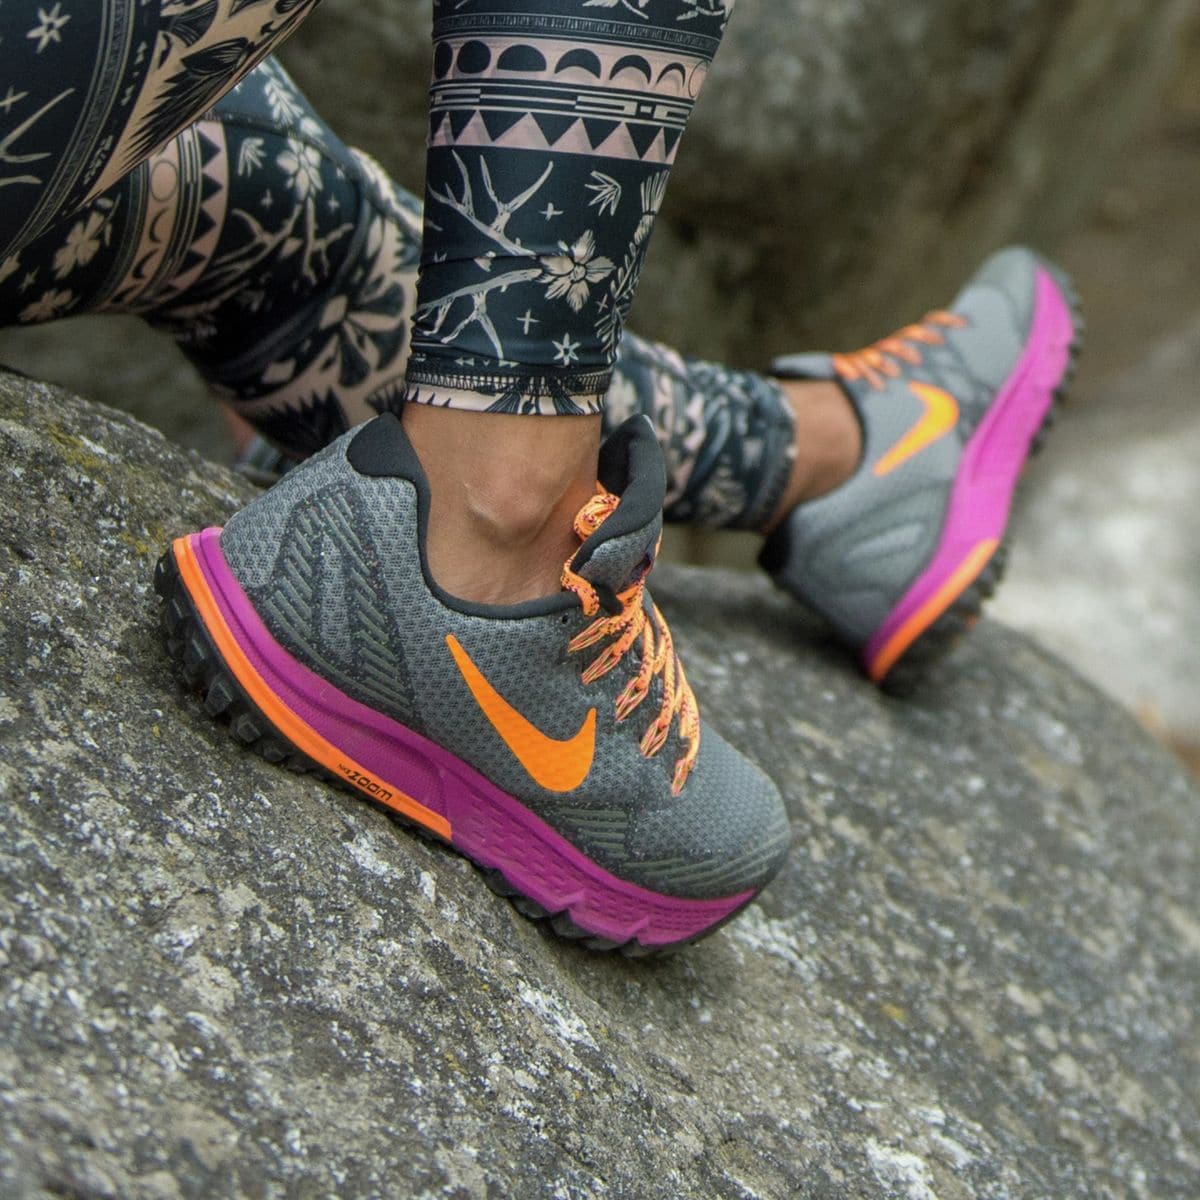 Apto Para un día de viaje Sermón Nike Air Zoom Wildhorse 3 Trail Running Shoe - Women's - Footwear